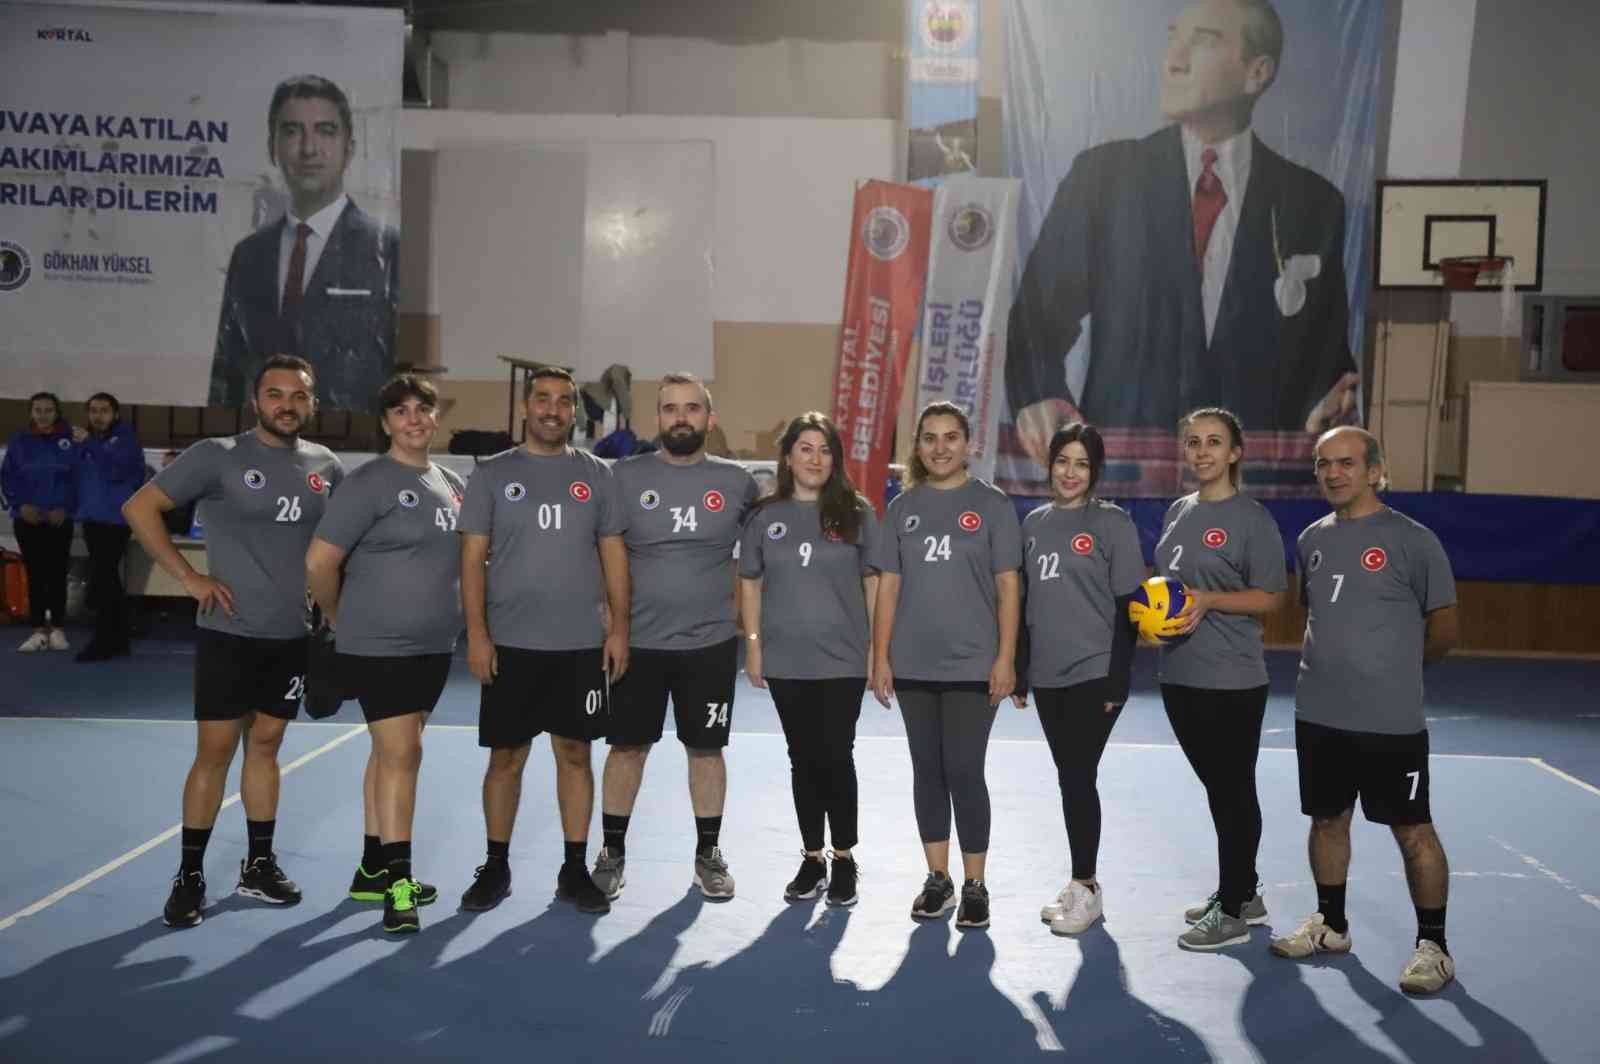 Kartal Belediyesi 2021 Voleybol Turnuvası başladı #istanbul